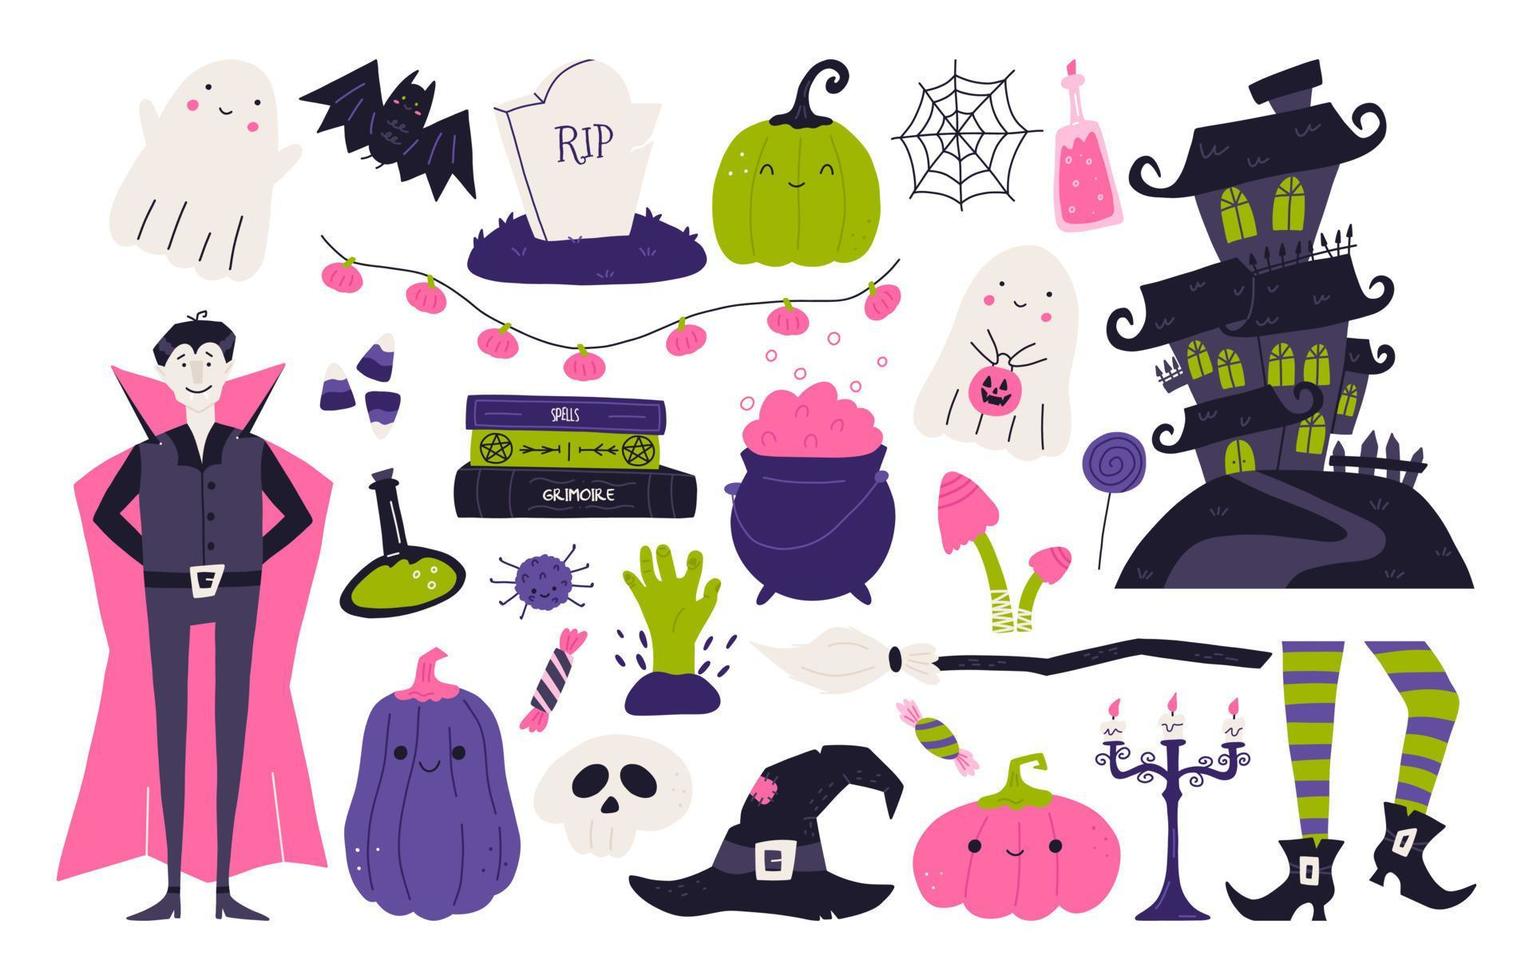 conjunto de lindos elementos de halloween, ilustración de vector plano de dibujos animados aislado sobre fondo blanco. divertidos personajes espeluznantes: vampiros, fantasmas, calabazas, arañas. casa embrujada, escoba de bruja y sombrero.